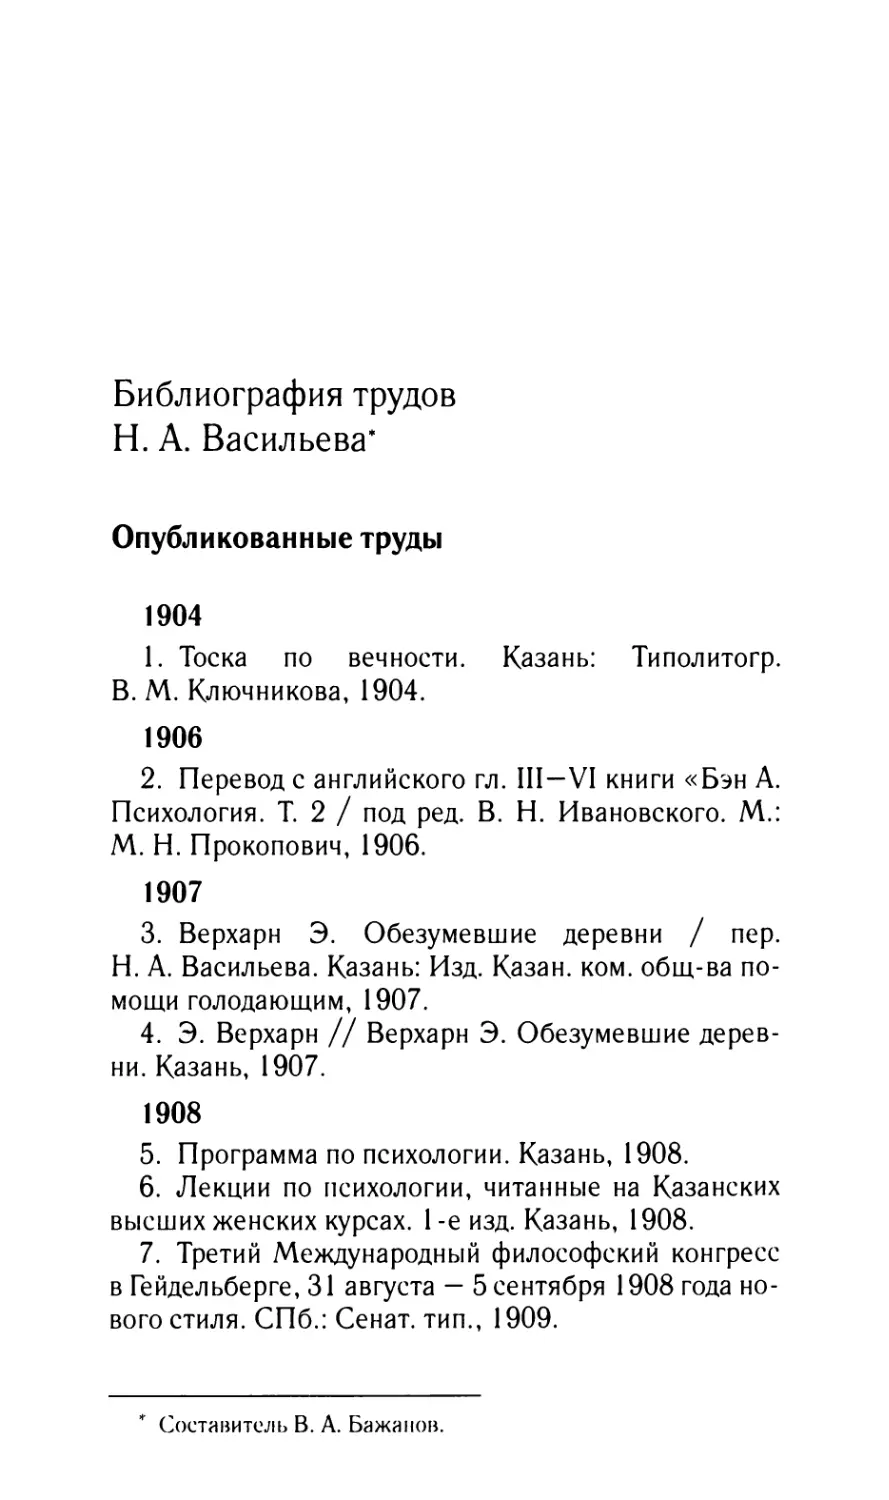 Библиография трудов Н.А. Васильева